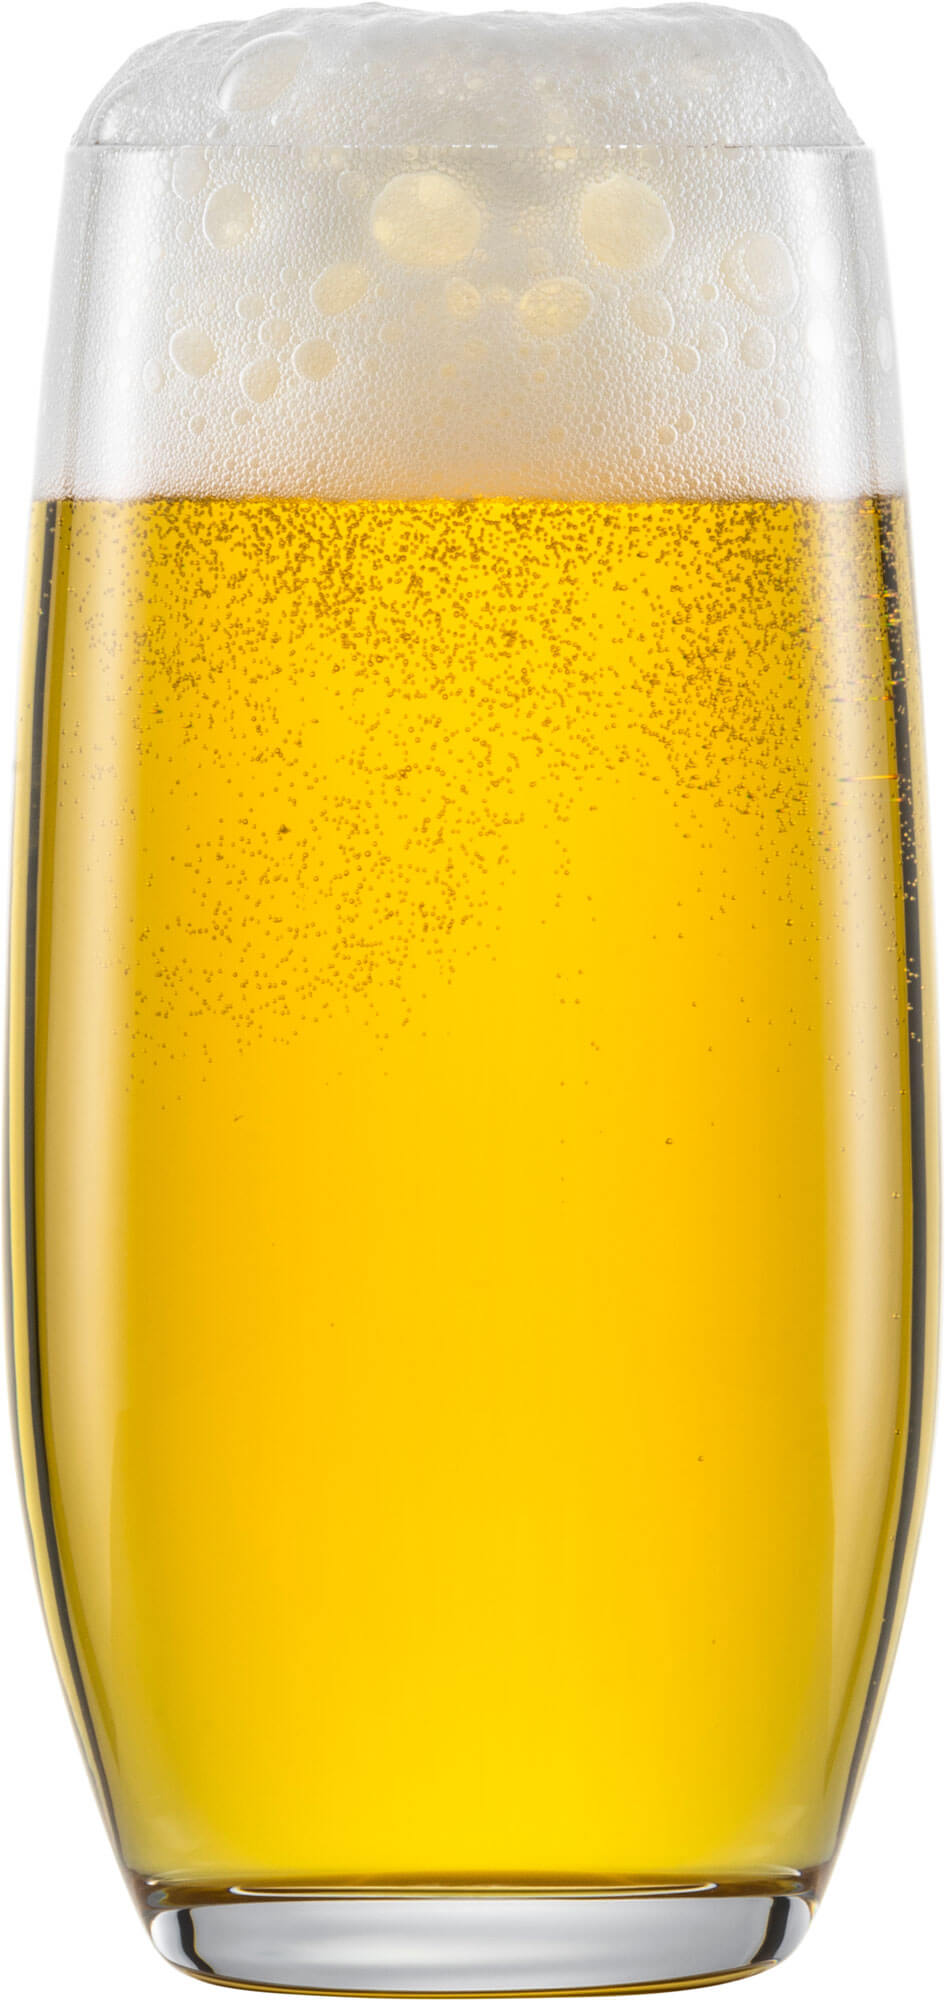 Beer glass Banquet, Schott Zwiesel - 430ml (6 pcs.)